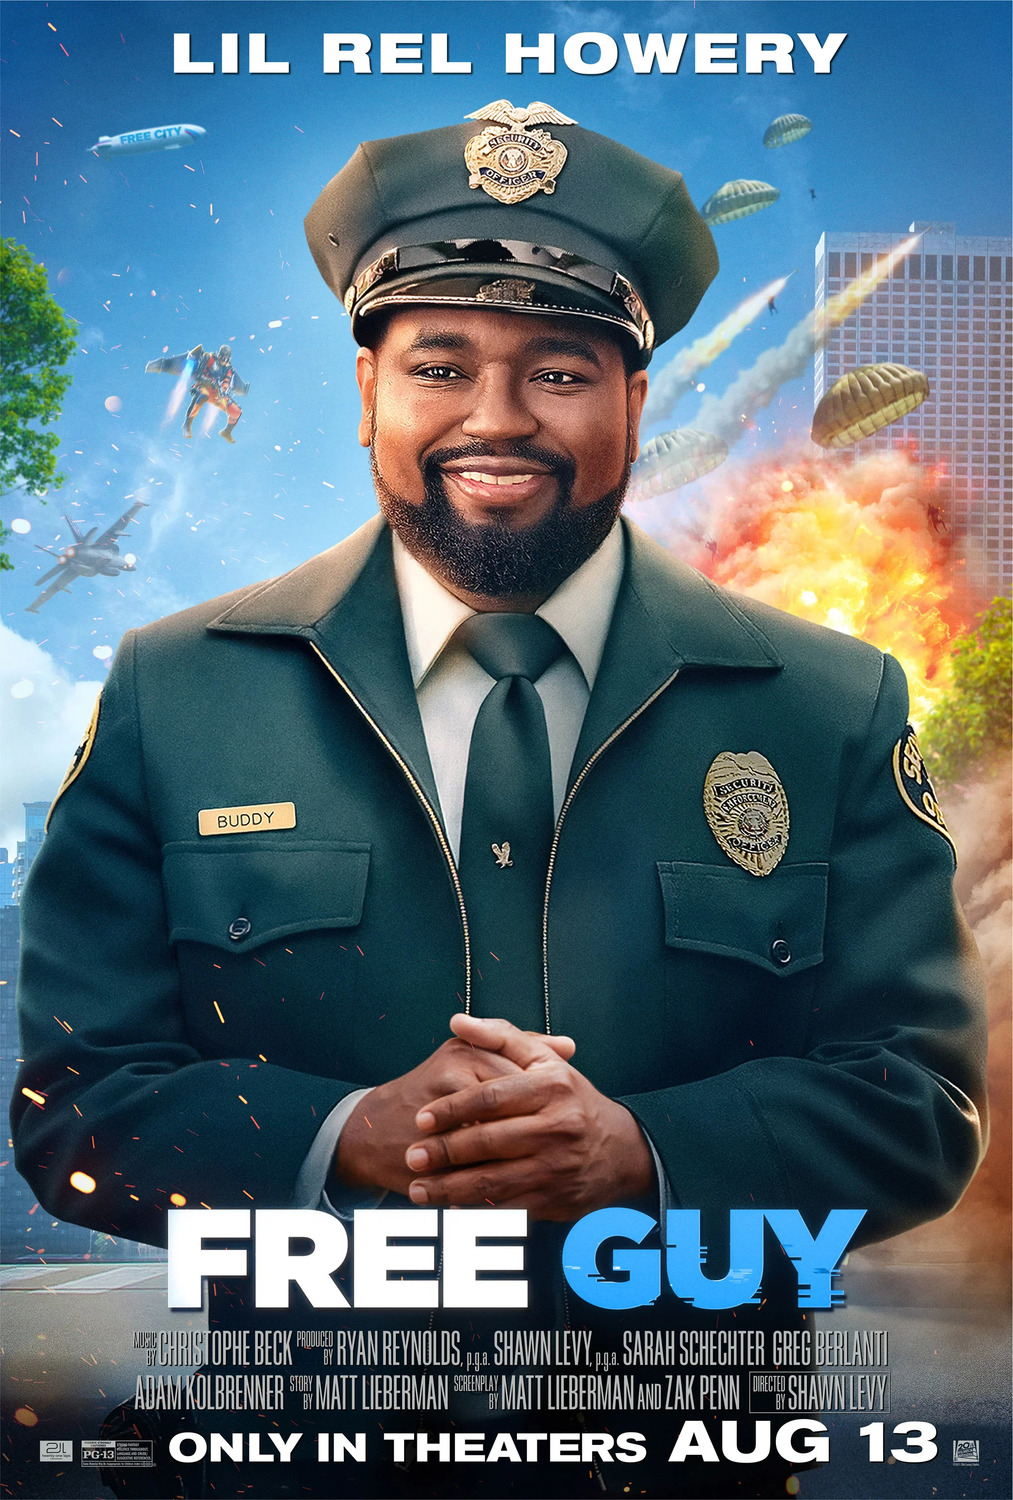 Free Guy, com Ryan Reynolds, ganha pôsteres parodiando jogos clássicos -  GKPB - Geek Publicitário